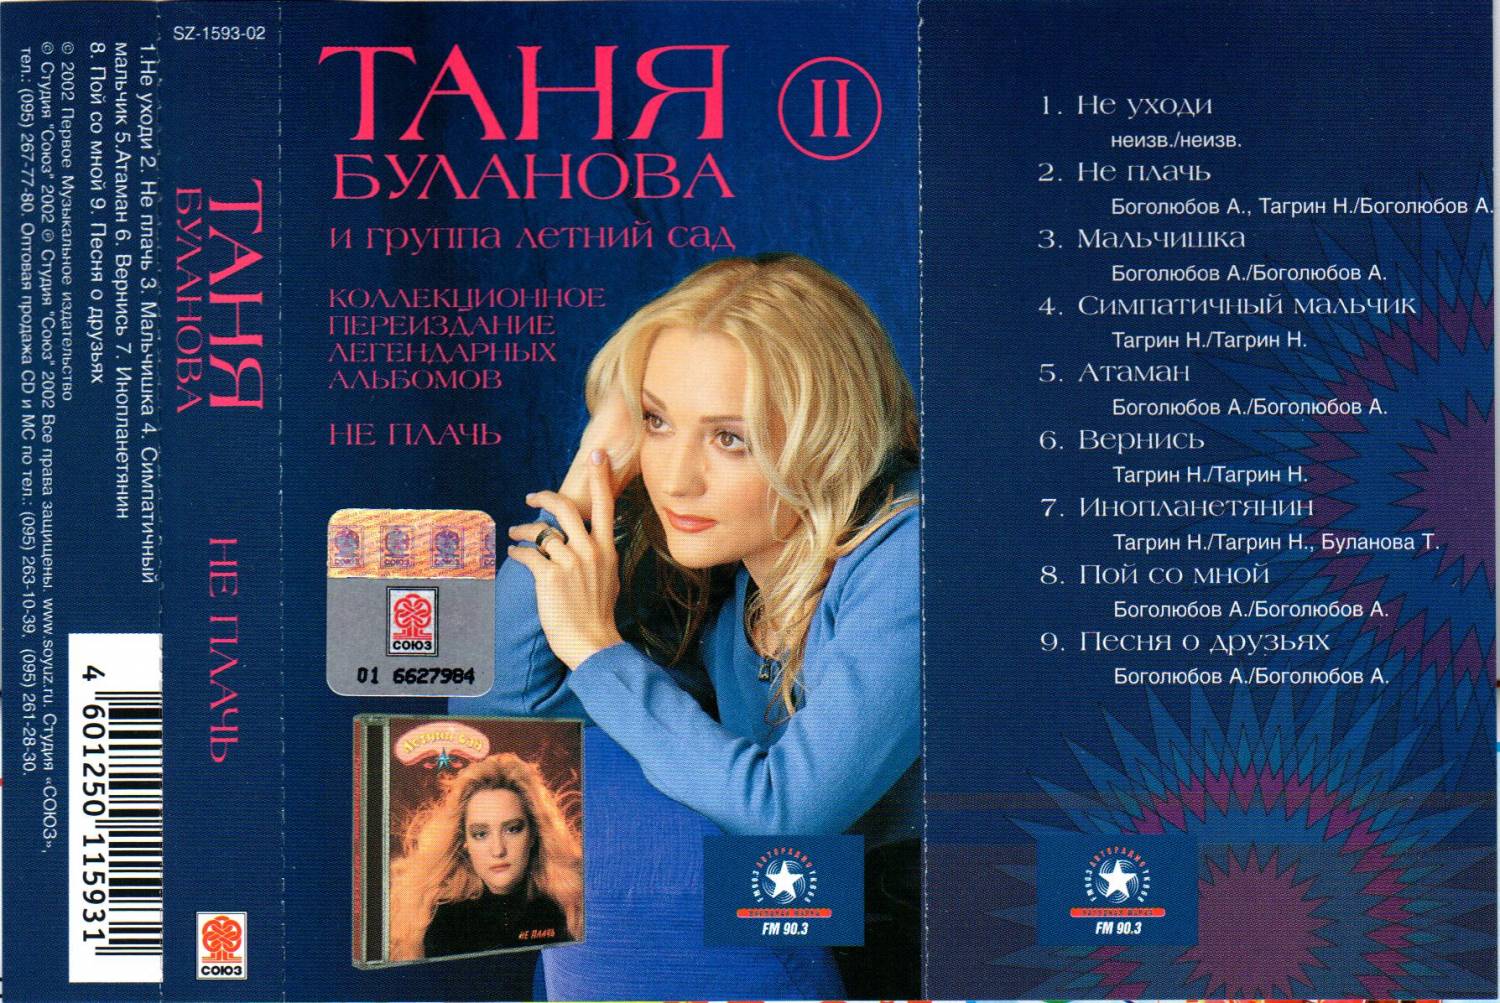 Песни буланова на телефон. Летний сад Буланова кассета. Таня Буланова 1991. Аудиокассеты Таня Буланова 2001. Буланова 2002.